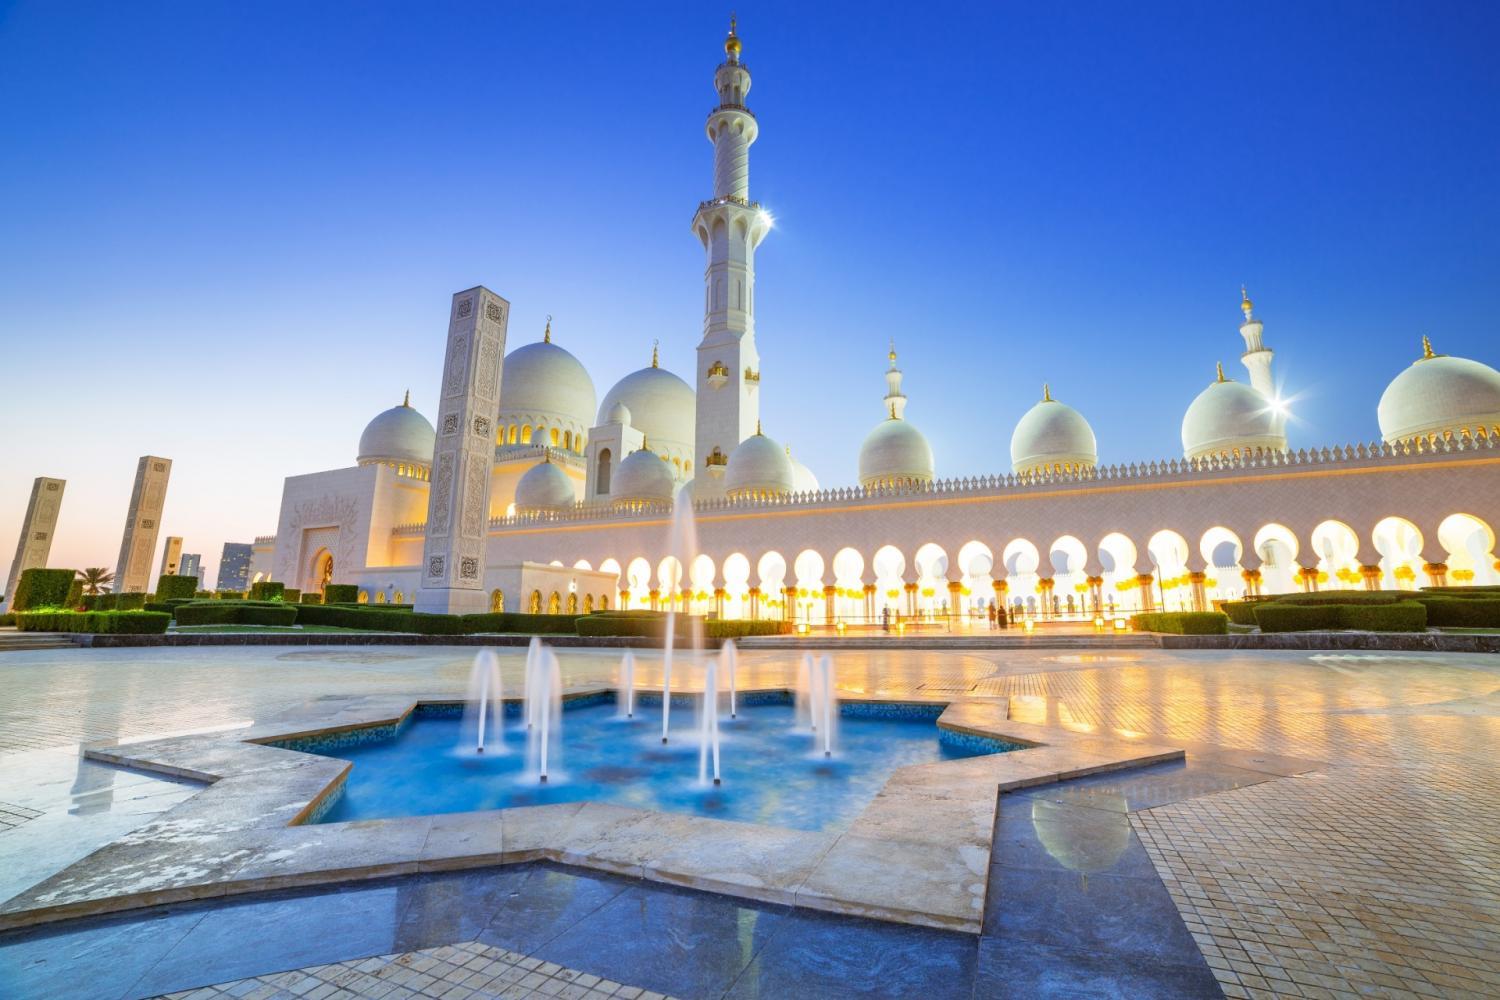 Abu-Dhabi-Mosque-&-Ferrari-World-from-Dubai-9